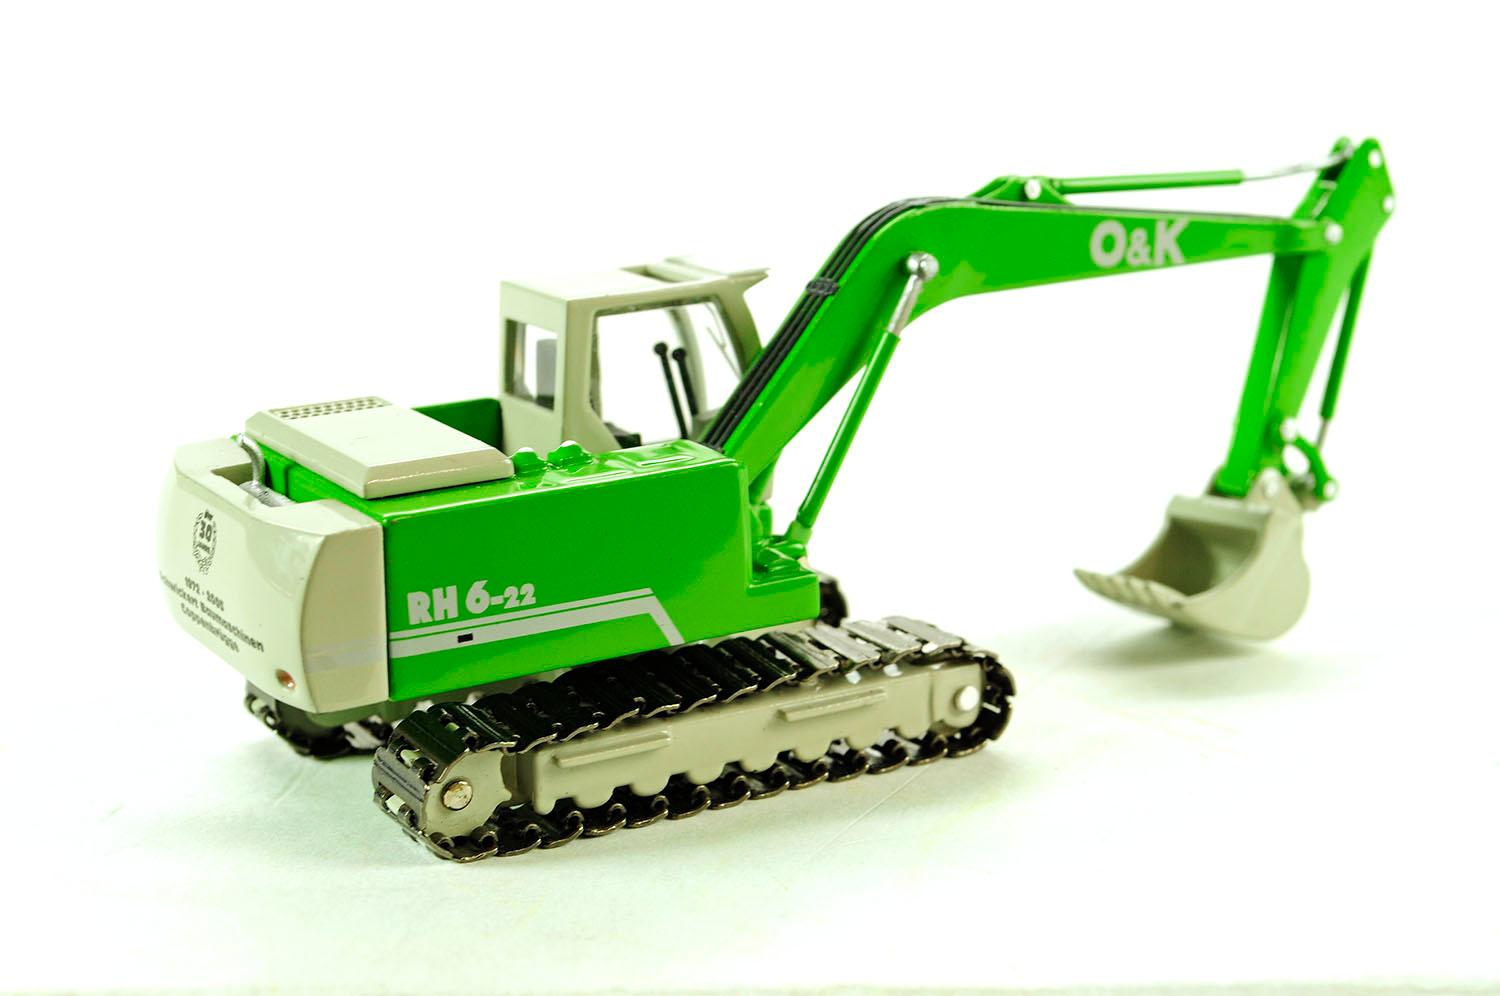 O&K RH6-22 Excavator - Schwickert - 1:87